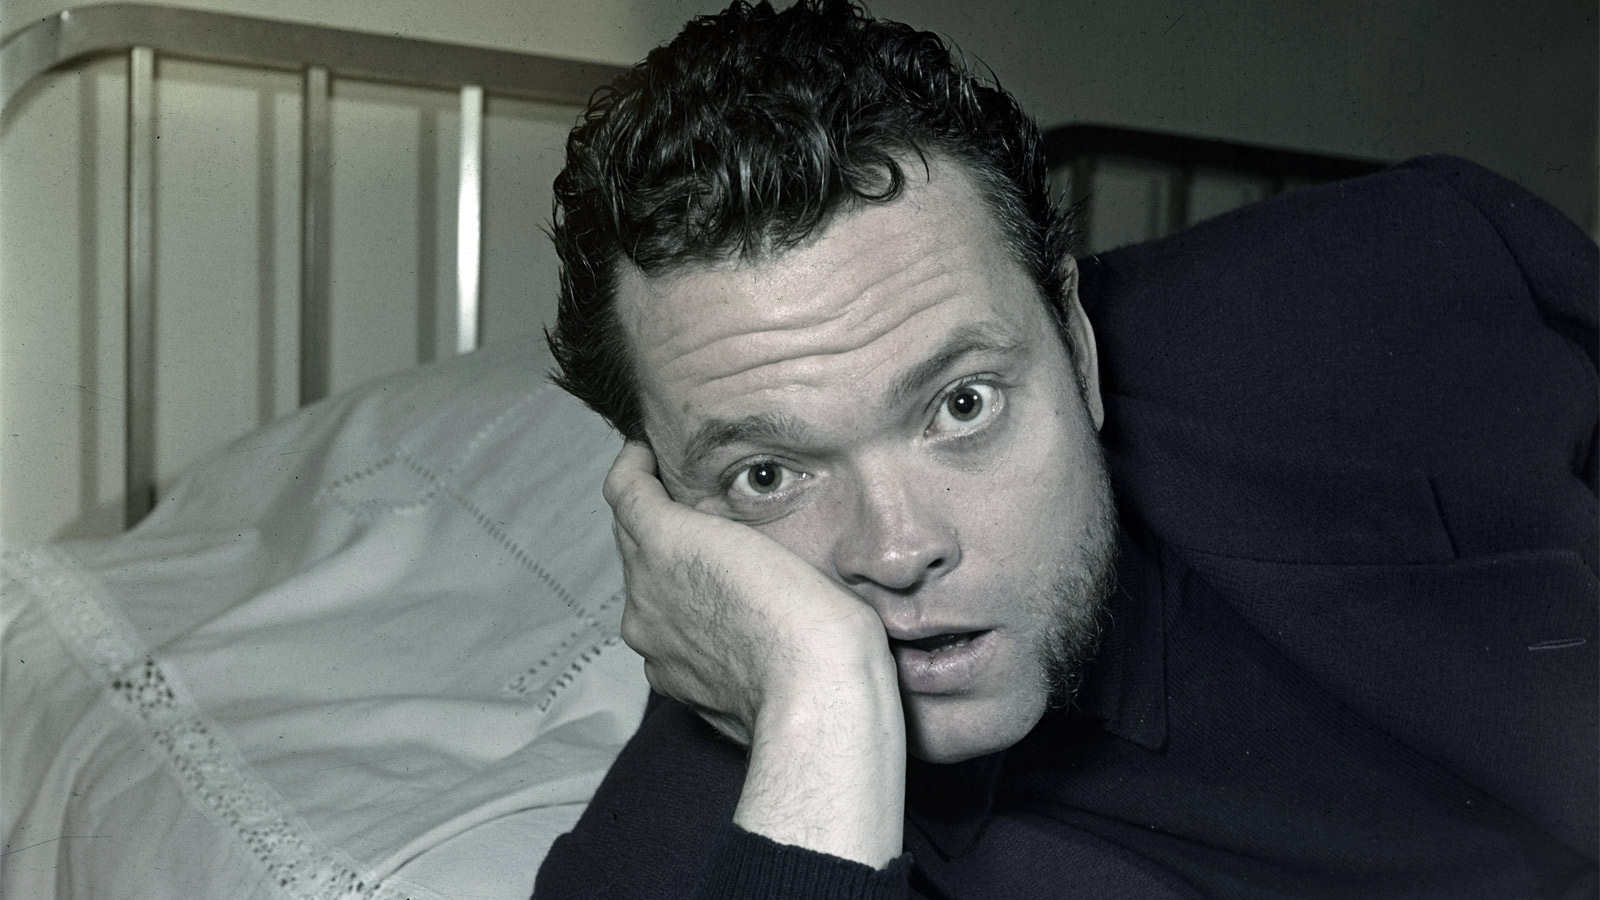 Orson Welles Headshot - Orson Welles leans on his face